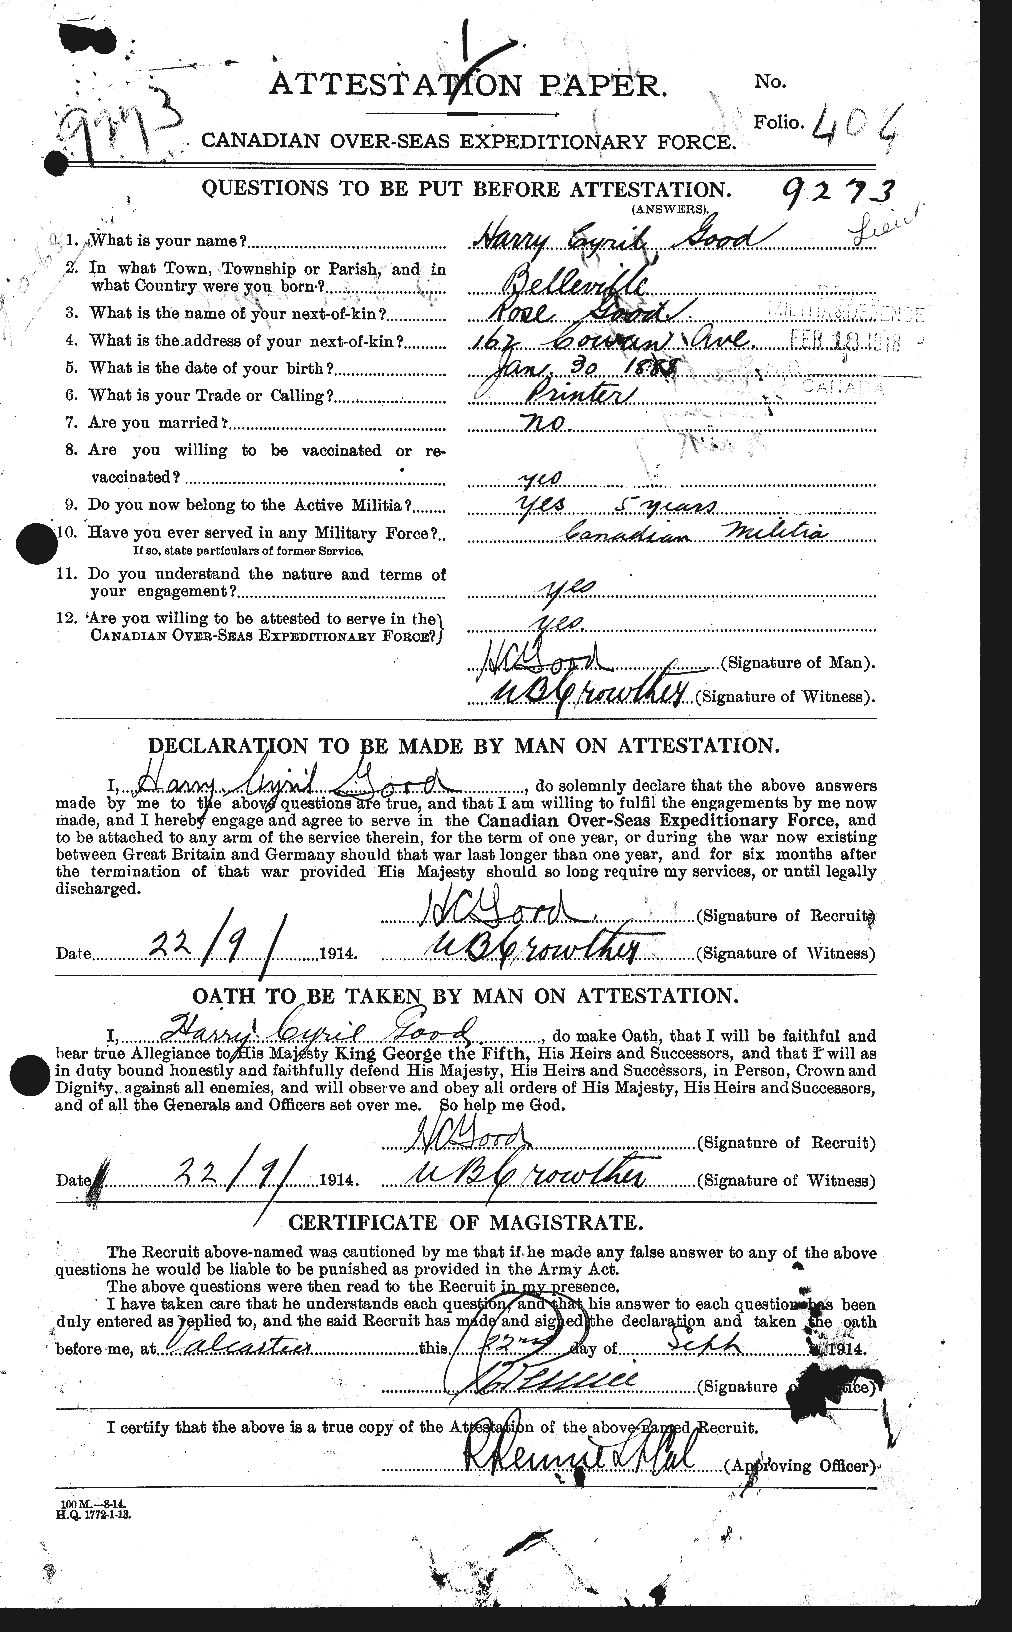 Dossiers du Personnel de la Première Guerre mondiale - CEC 354960a